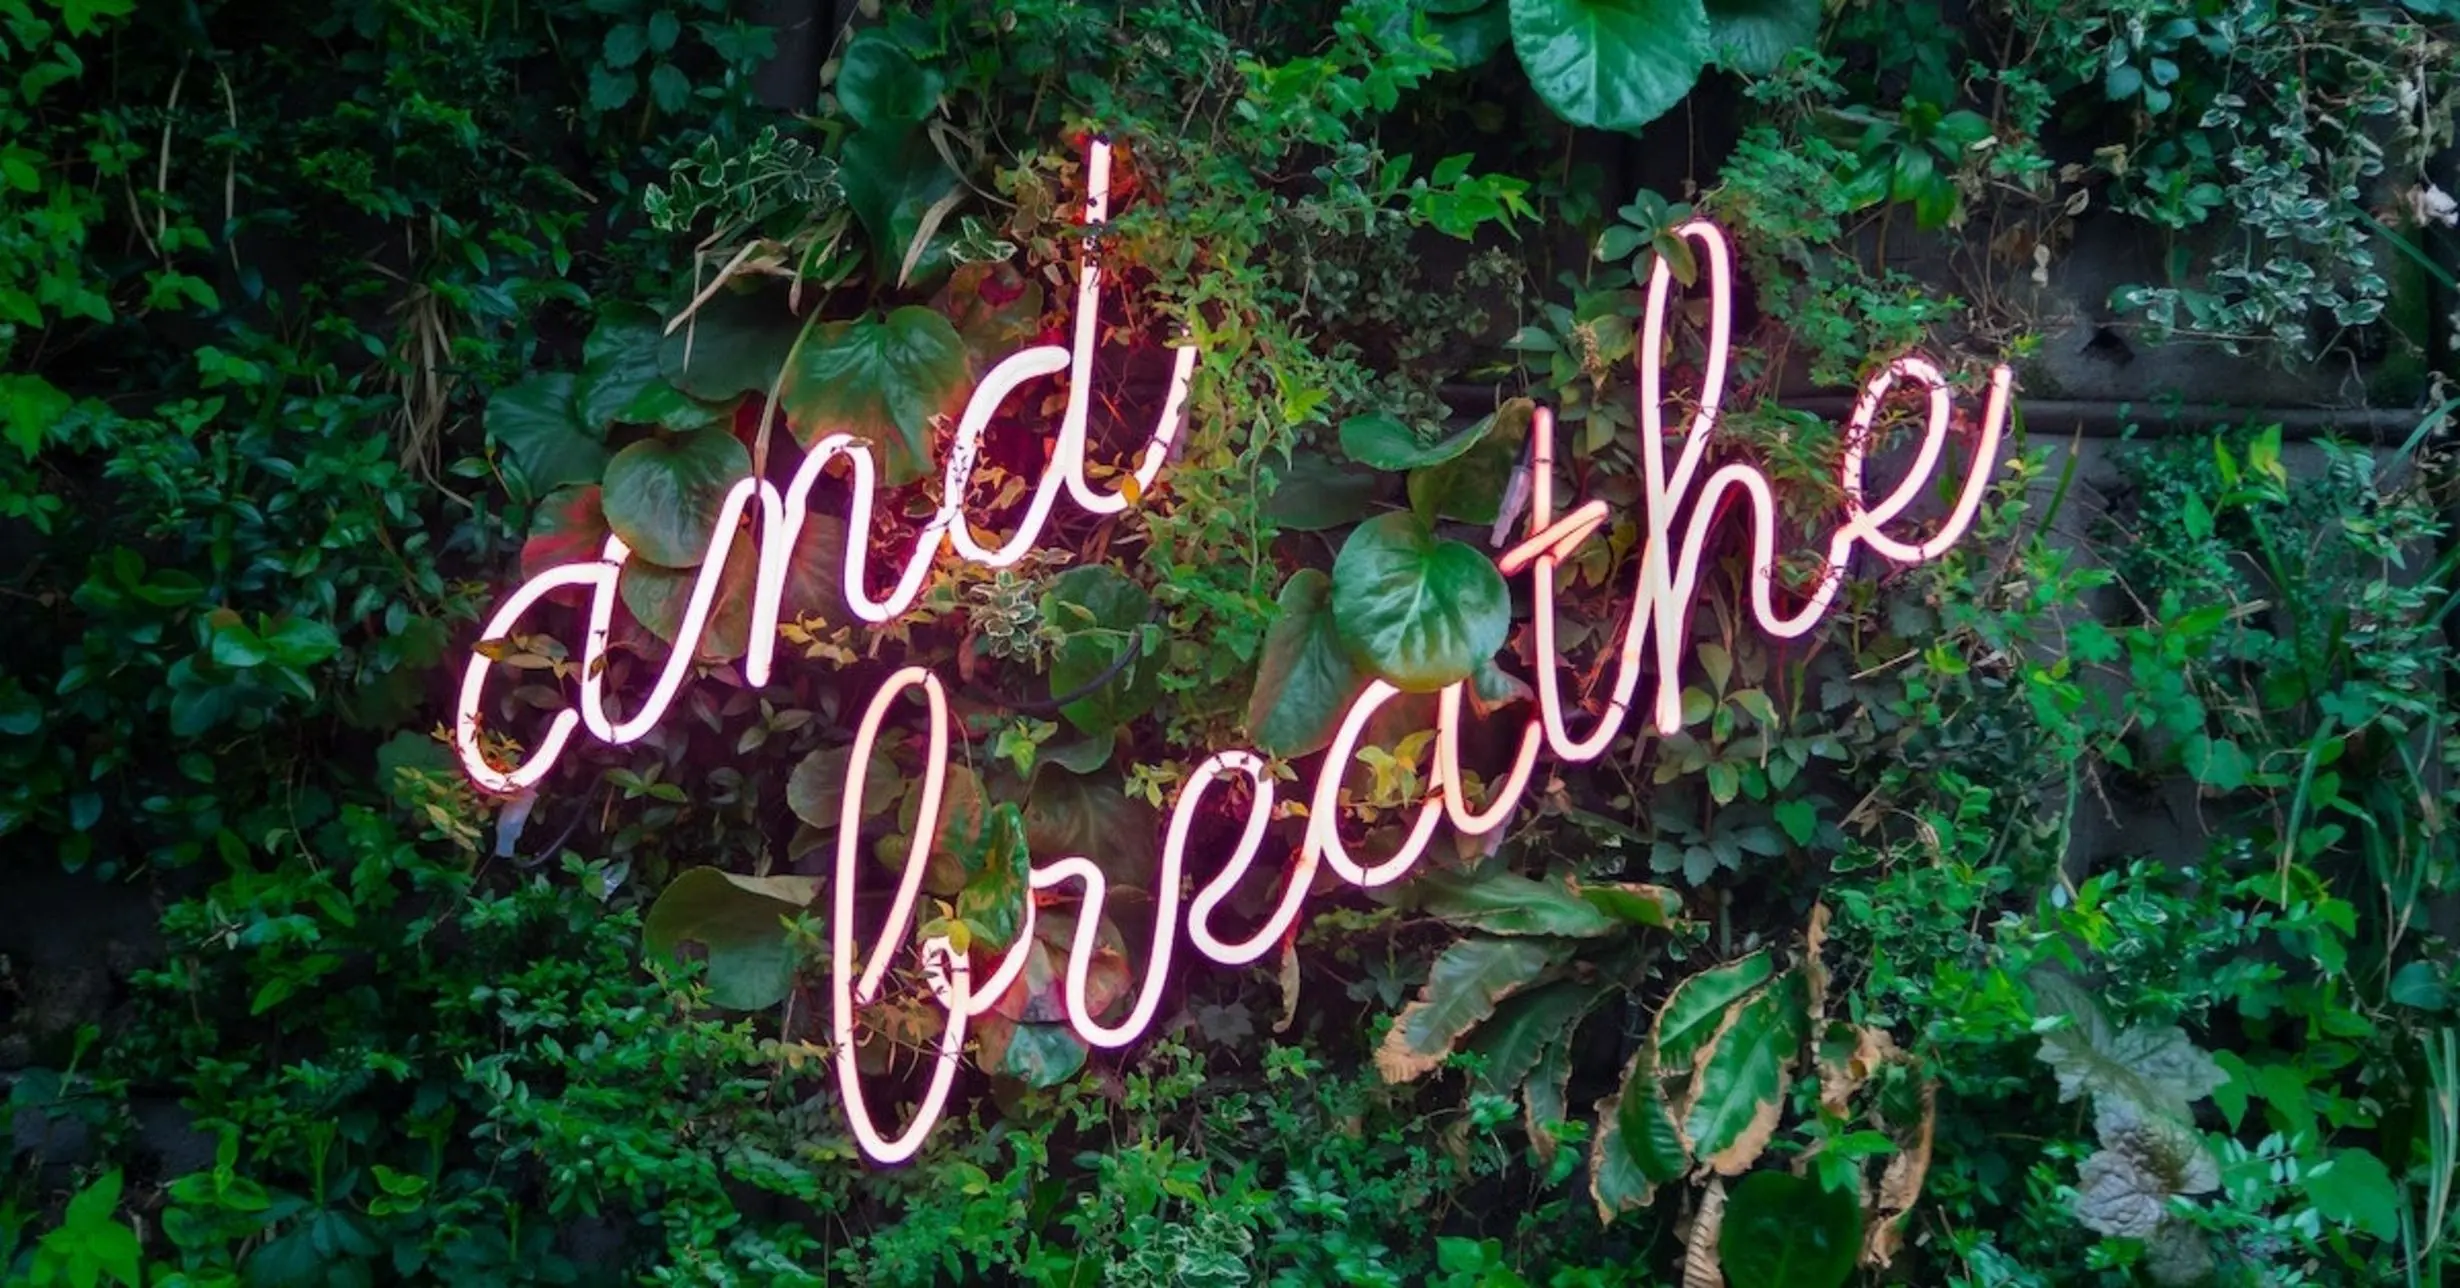 Schriftzug "and breathe" auf Pflanzen